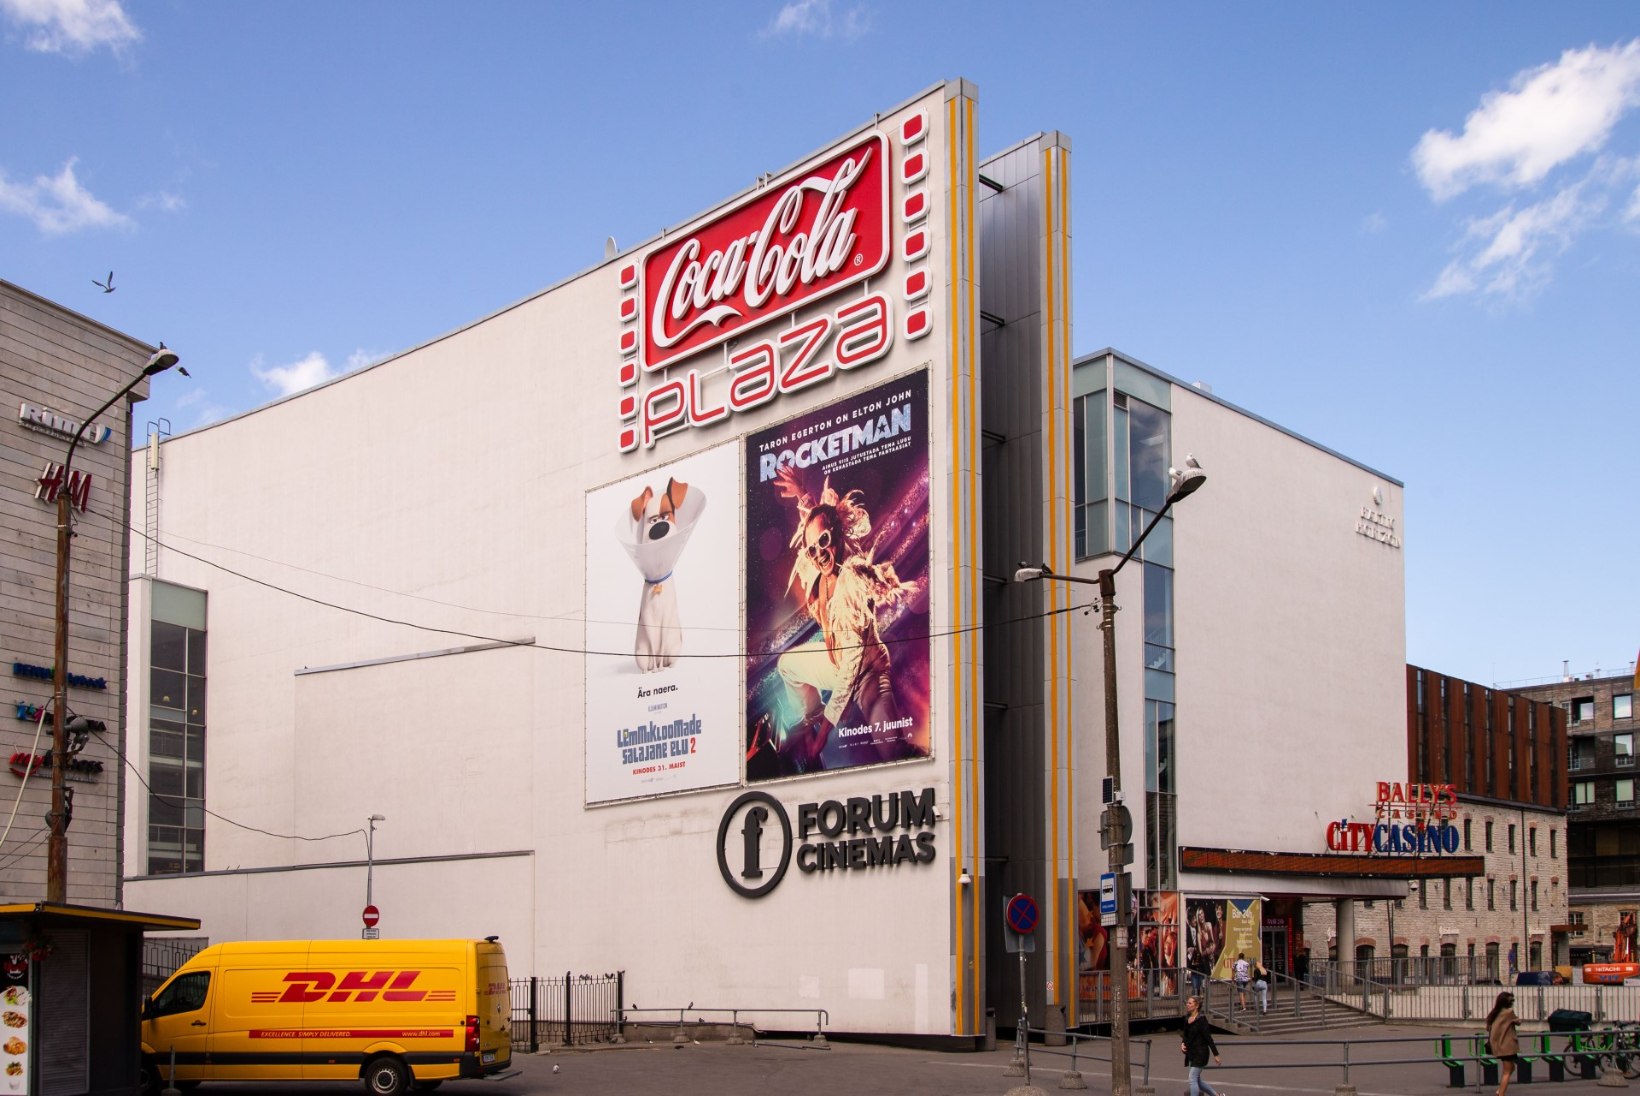 Coca-Cola Plazas algas remont: kaotatakse kassad ning juurde ehitatakse uus kinosaal 